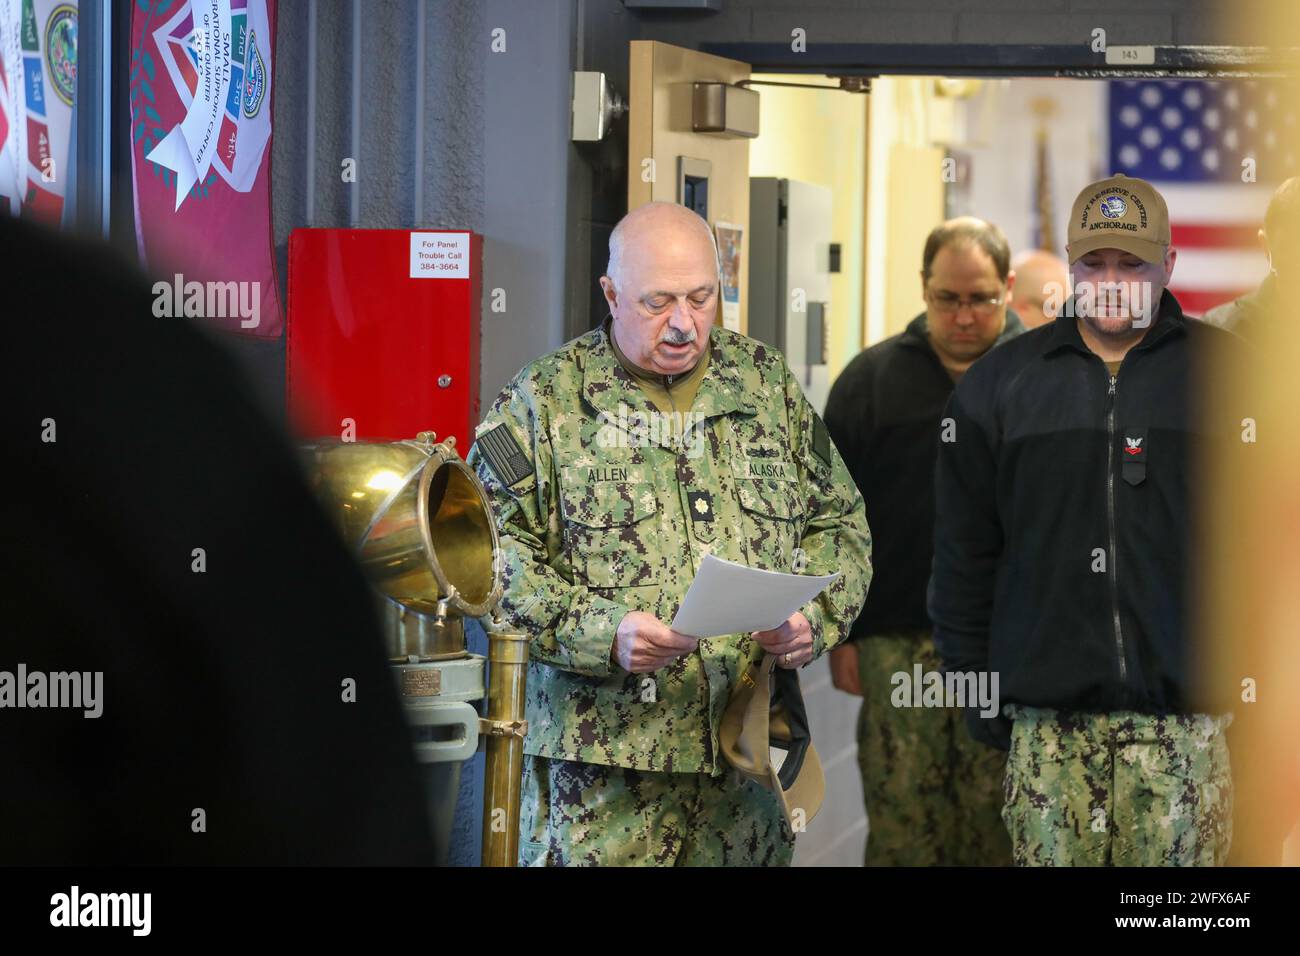 Tenente Cmdr. (AK) David Allen, capo di stato maggiore della milizia navale dell'Alaska, offre una preghiera silenziosa per i compagni di nave in partenza durante una cerimonia commemorativa di due Bell presso il U.S. Navy Reserve Center sulla base congiunta Elmendorf Richardson, Alaska, 24 gennaio 2024. Dopo la cerimonia di commemorazione, fu innalzata una bandiera in onore del sottomarino S-26 e dell'equipaggio che furono persi il 24 gennaio 1942. L'evento commemorativo ha sottolineato l'unità e l'impegno condiviso tra le componenti navali per onorare i sacrifici fatti dai sottomarini nel corso della storia. (Alaska National Guard Foto Stock